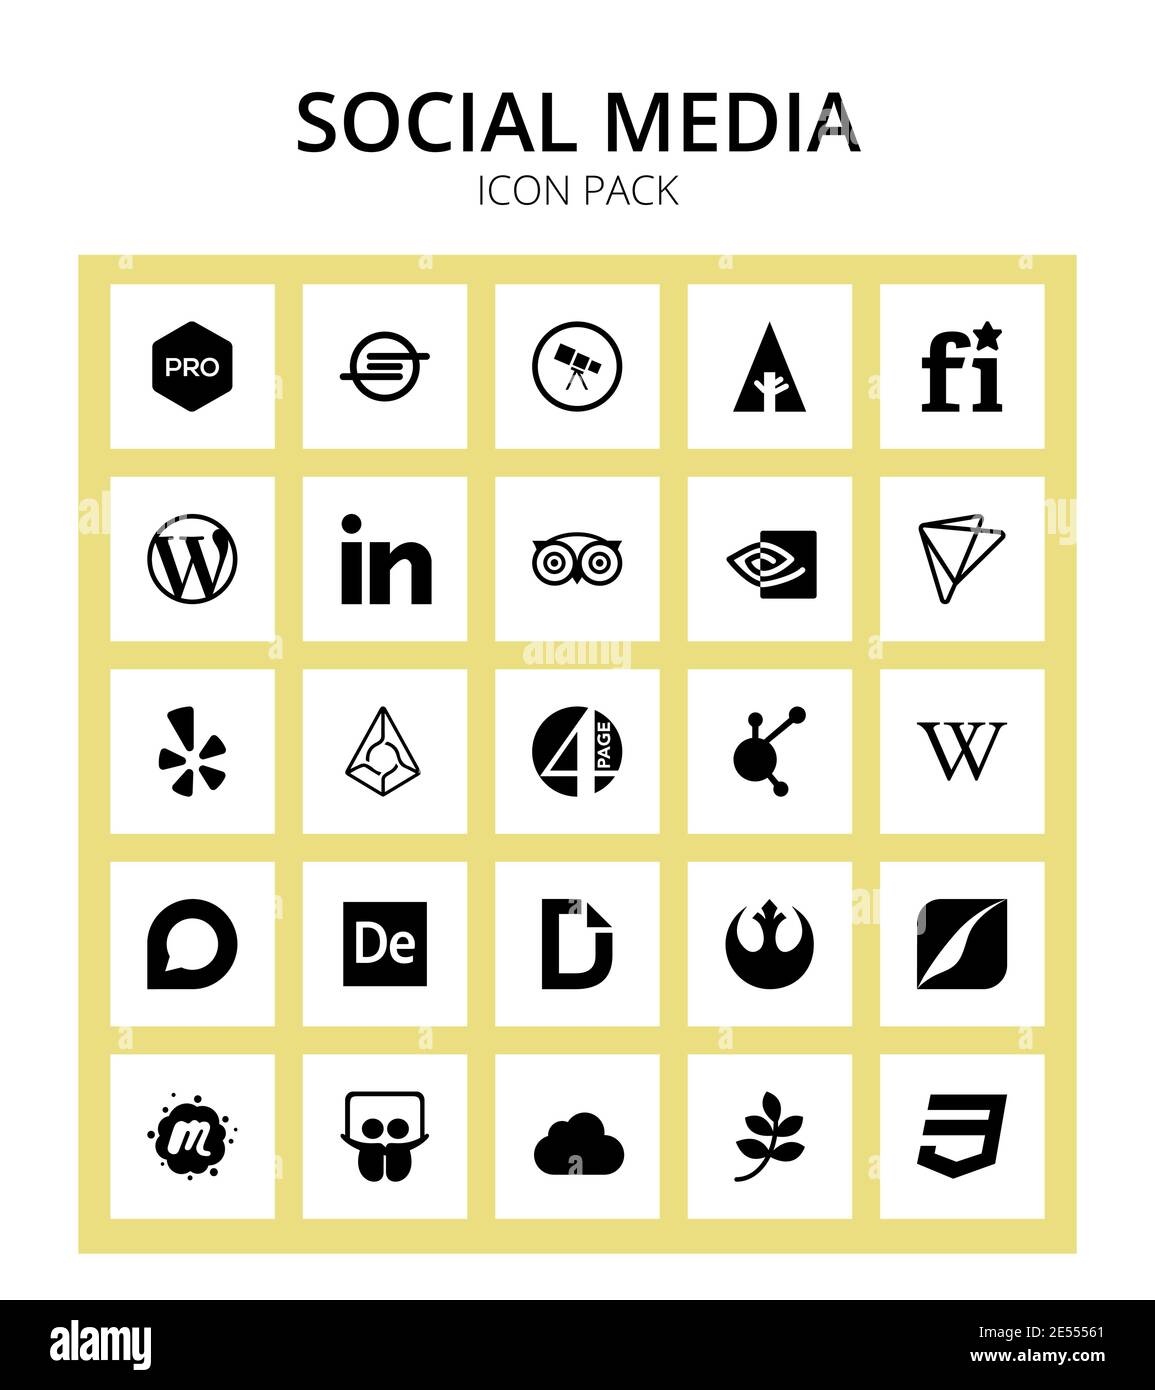 Social media - Wikipedia